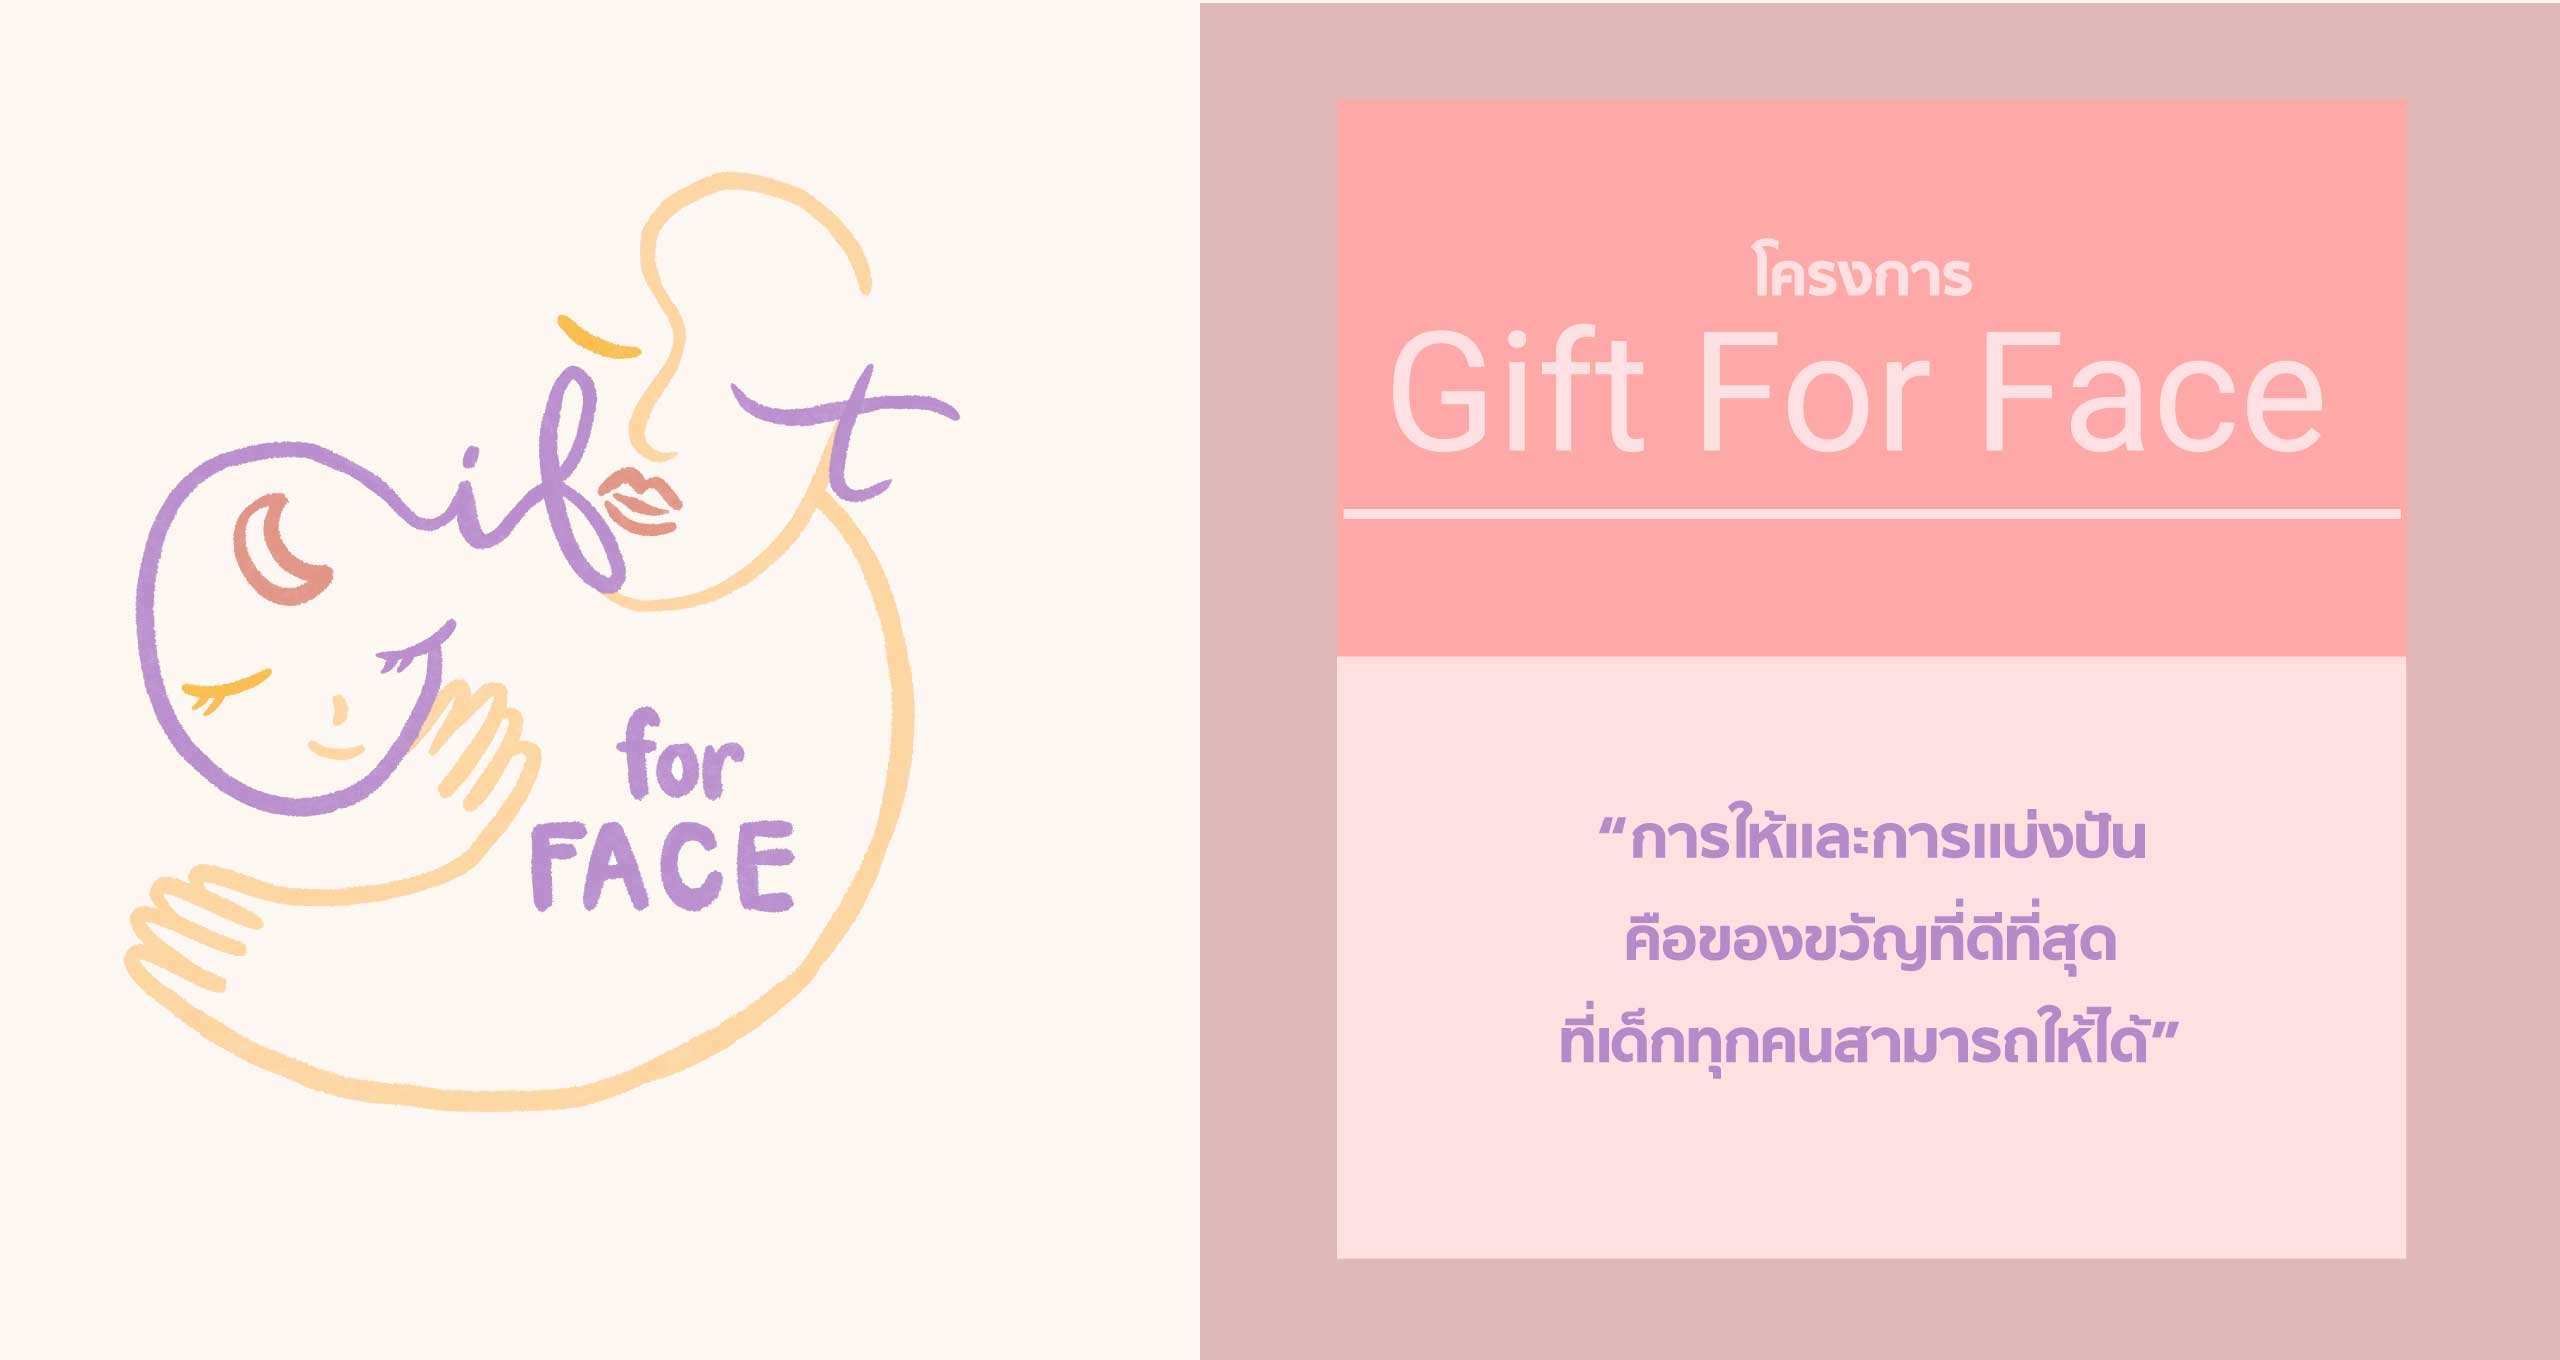 โครงการ Gift For Face - การให้และการแบ่งปันคือของขวัญที่ดีที่สุดที่เด็กทุกคนสามารถให้ได้ เพื่อศูนย์สมเด็จพระเทพรัตน​ฯ​ แก้ไขความพิการบนใบหน้าและศีรษะ โรงพยาบาลจุฬาลงกรณ์​ สภากาชาดไทย